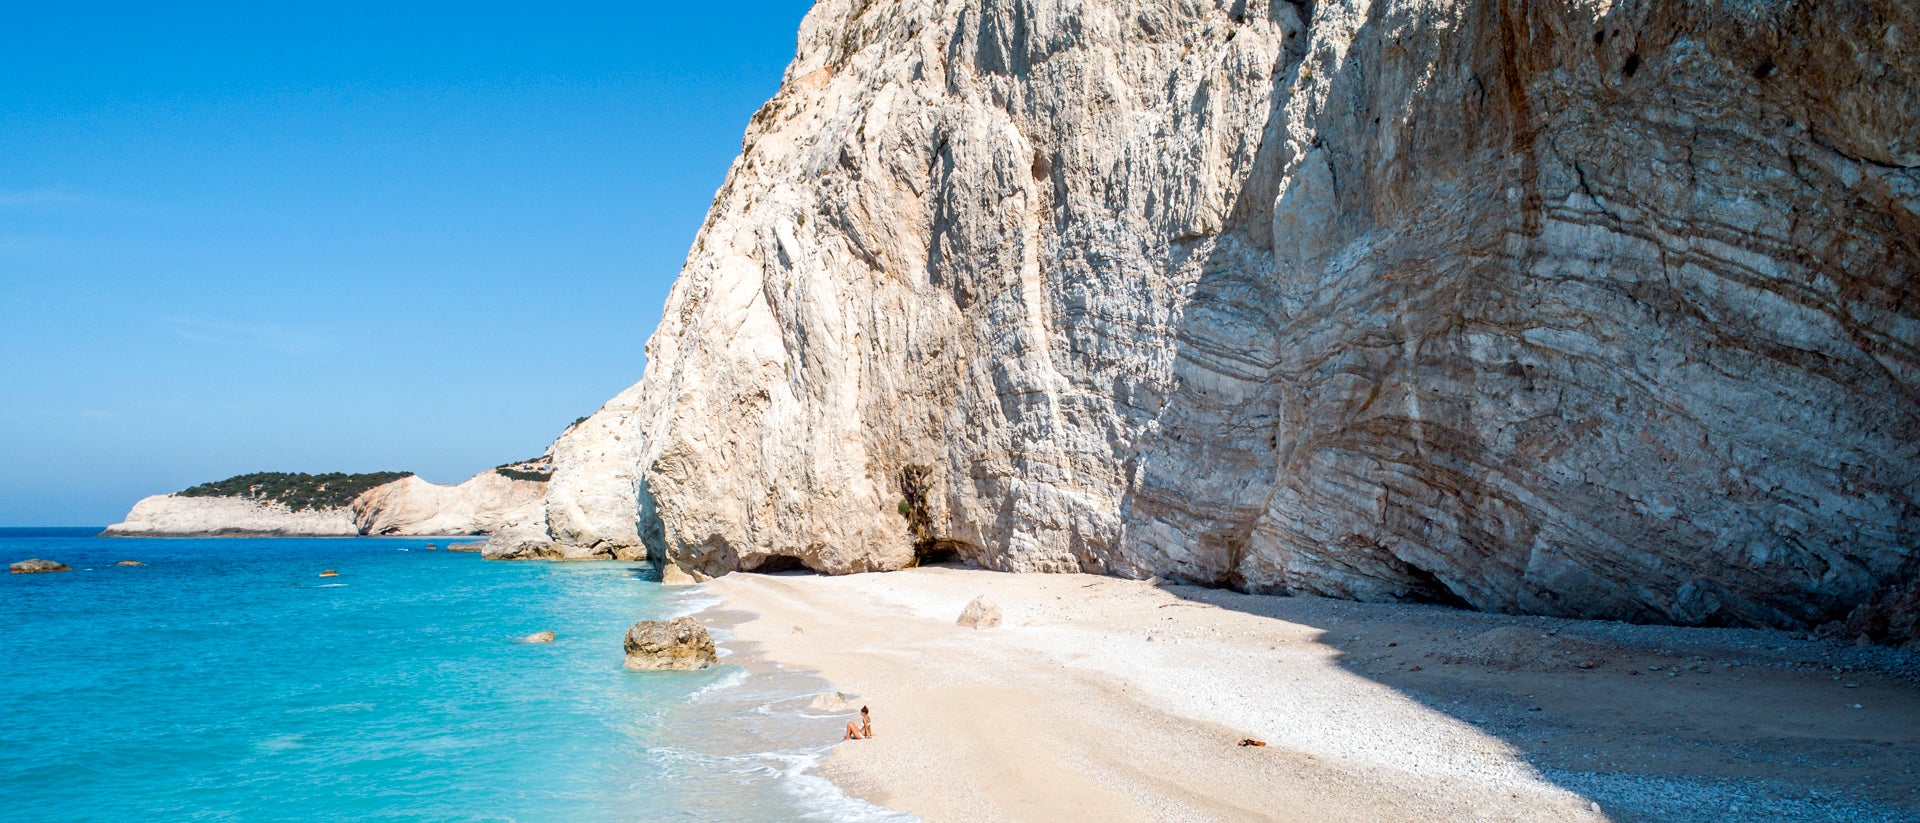 Acque blu, scogliere naturali e spiagge paradisiache a Lefkada